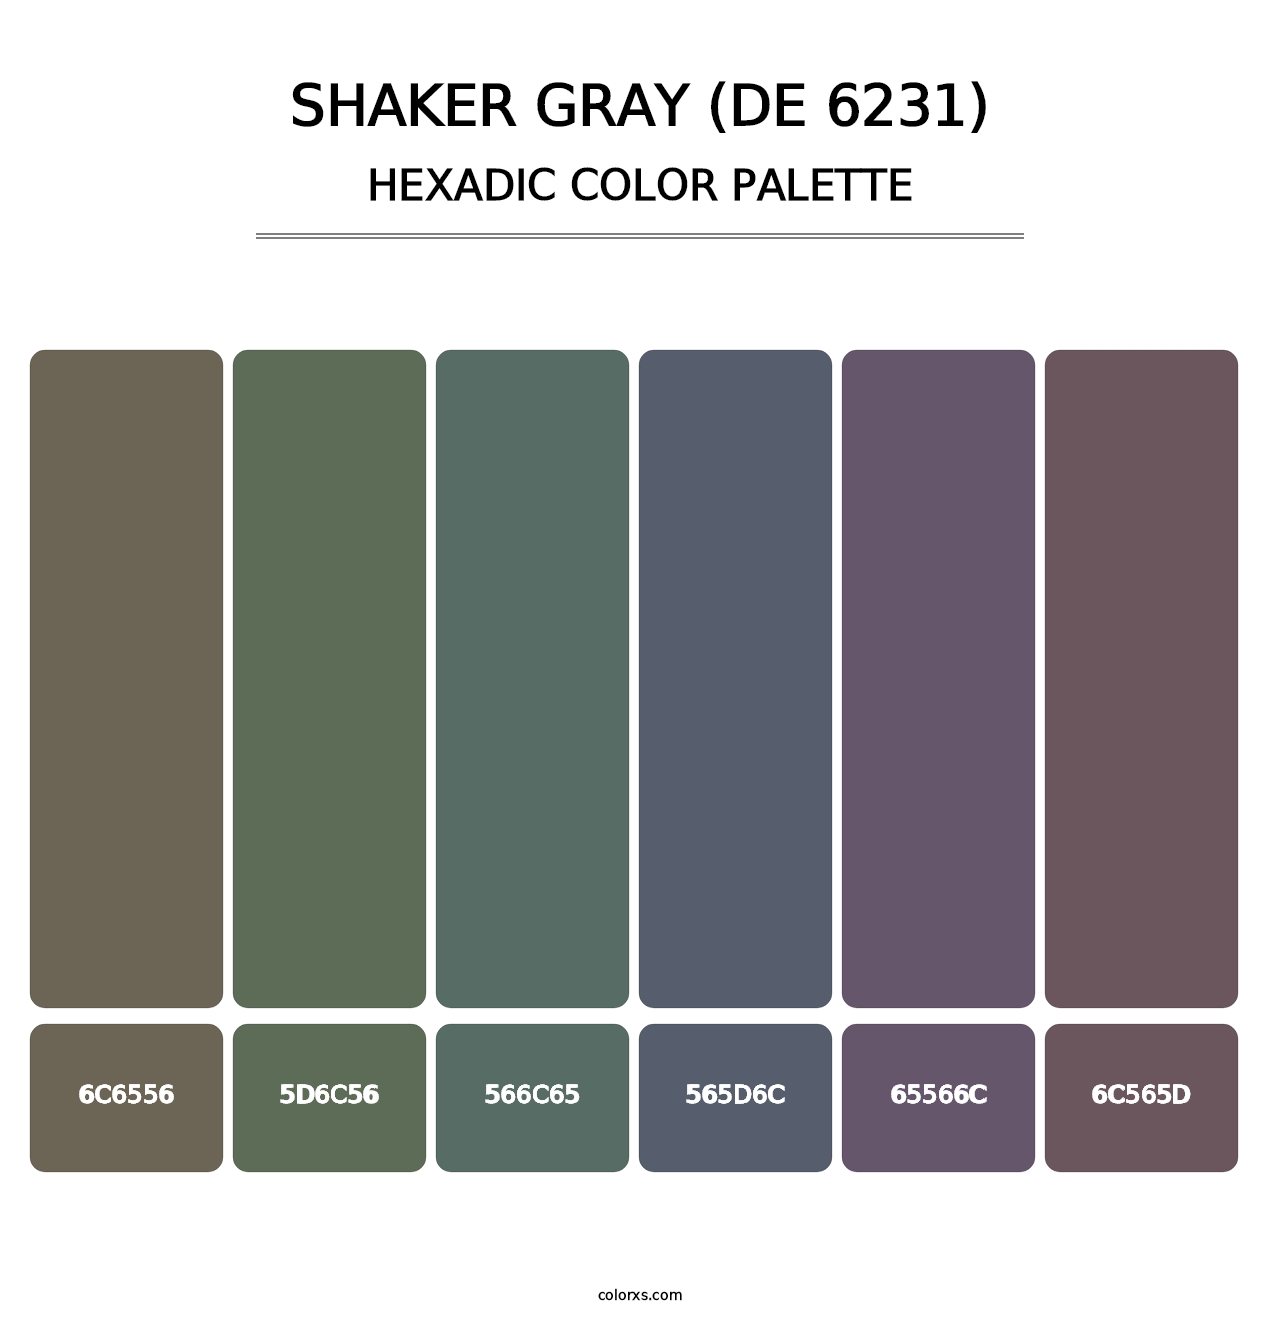 Shaker Gray (DE 6231) - Hexadic Color Palette